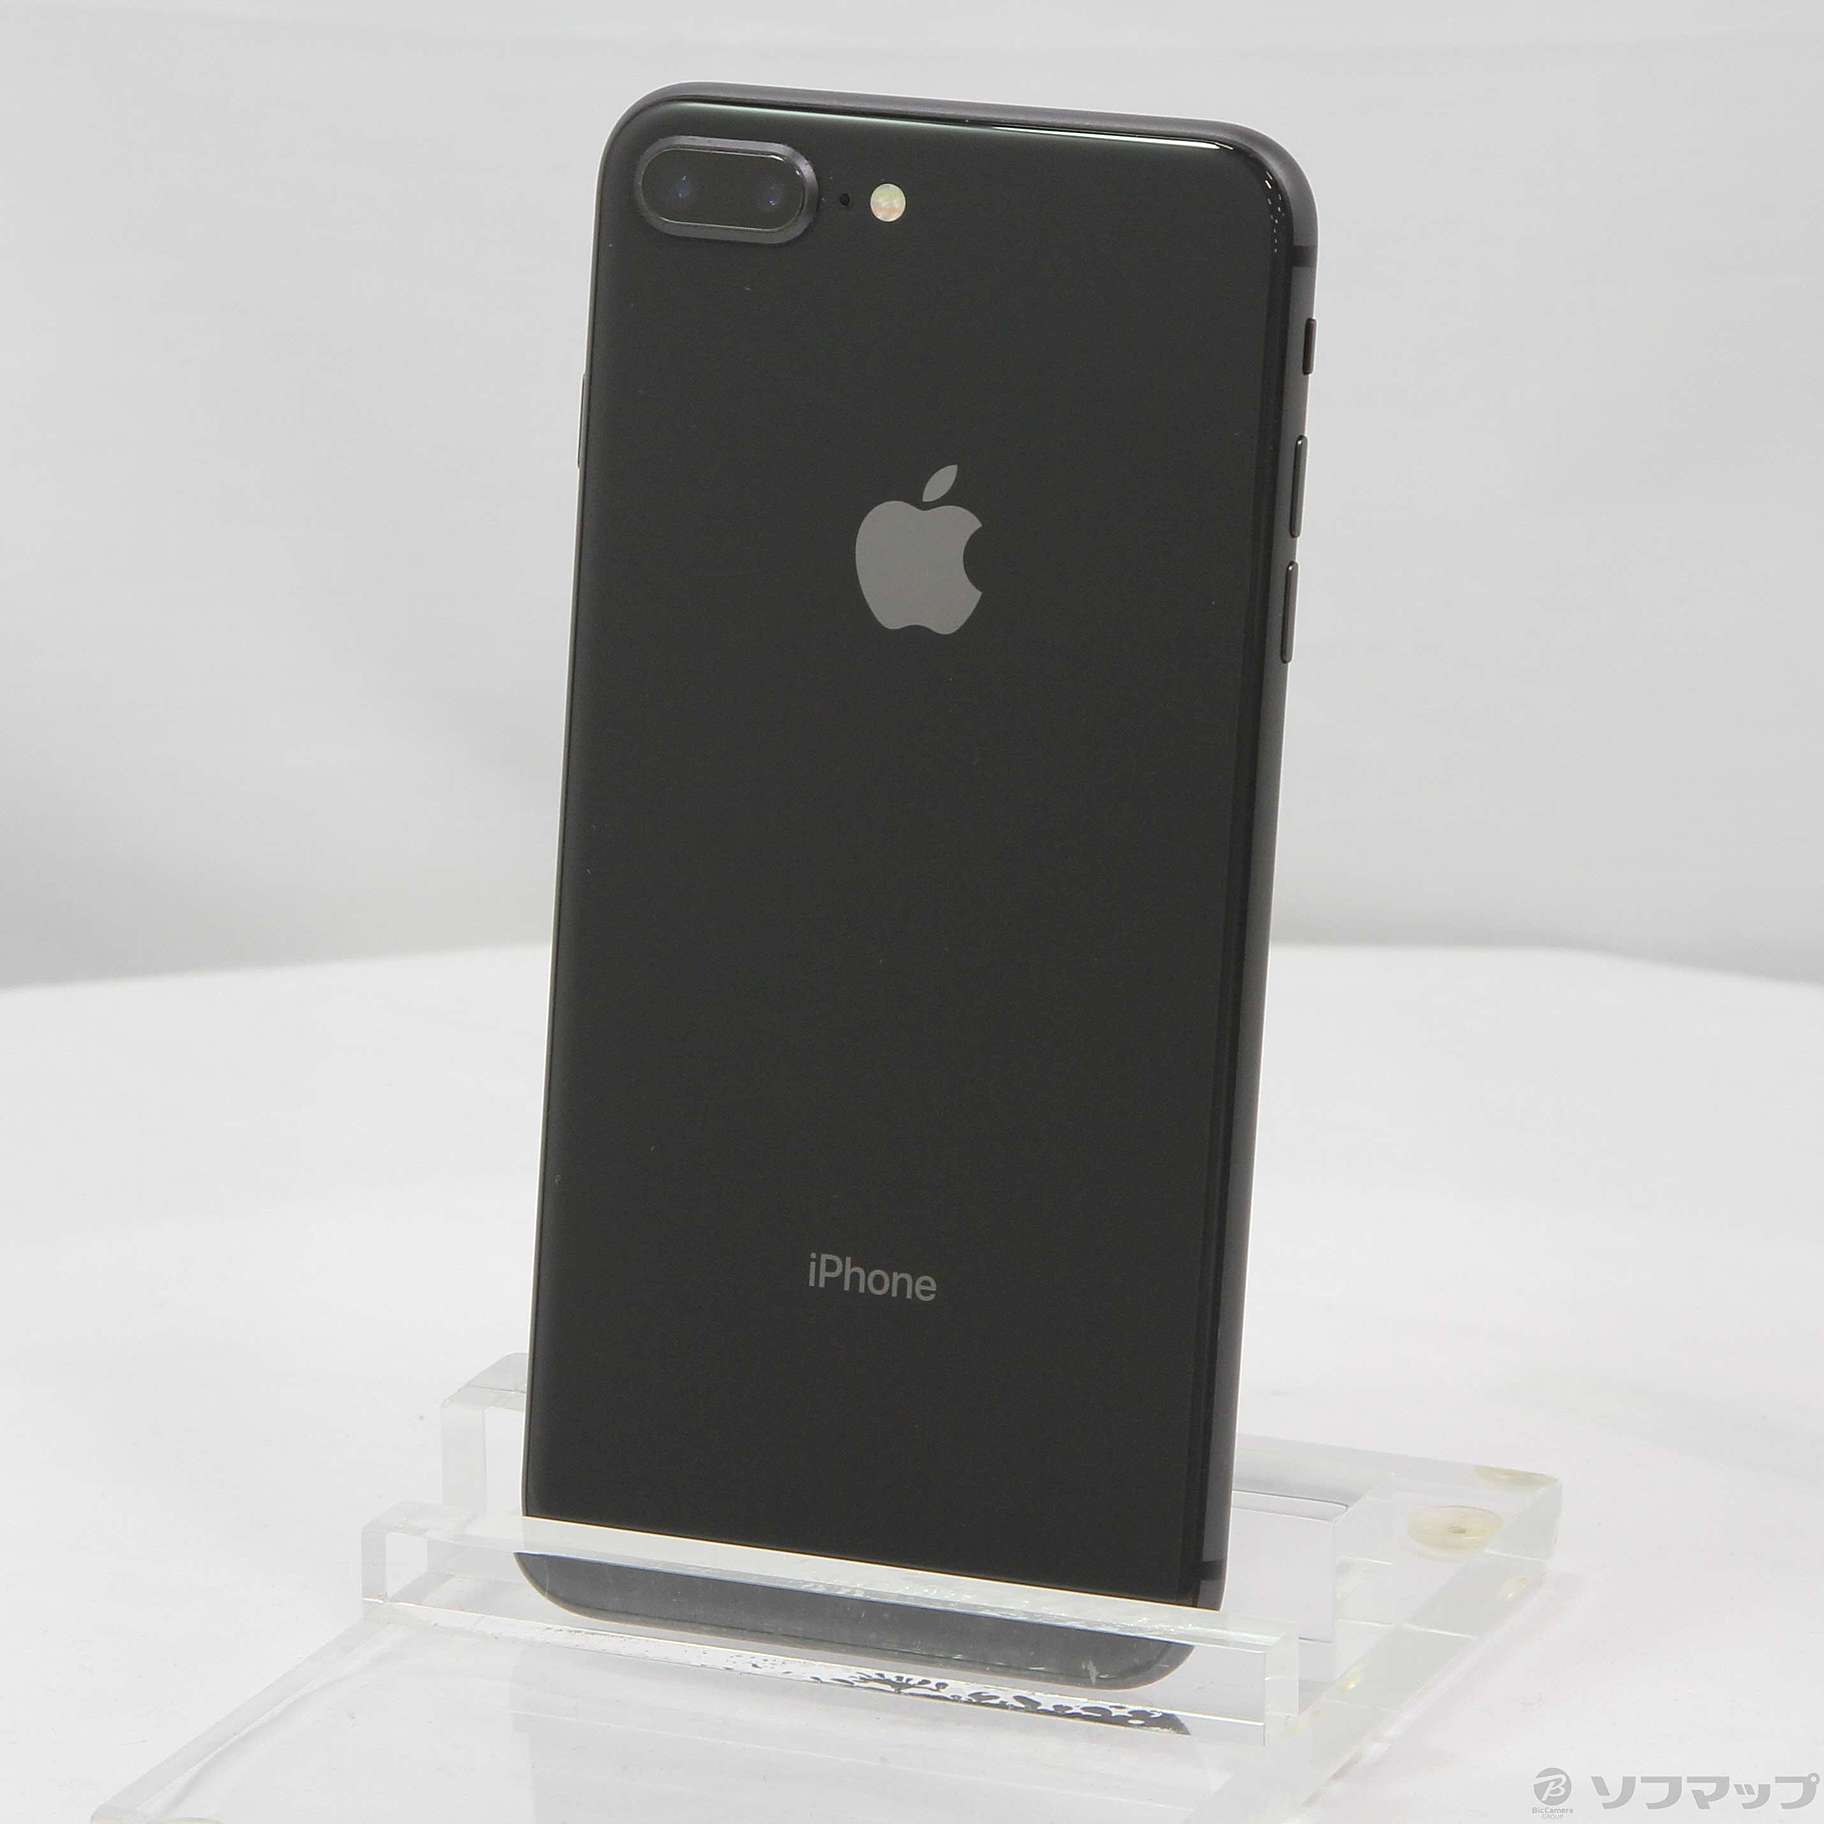 スマートフォン携帯電話アップル iPhone8 Plus 128GB Space Gray